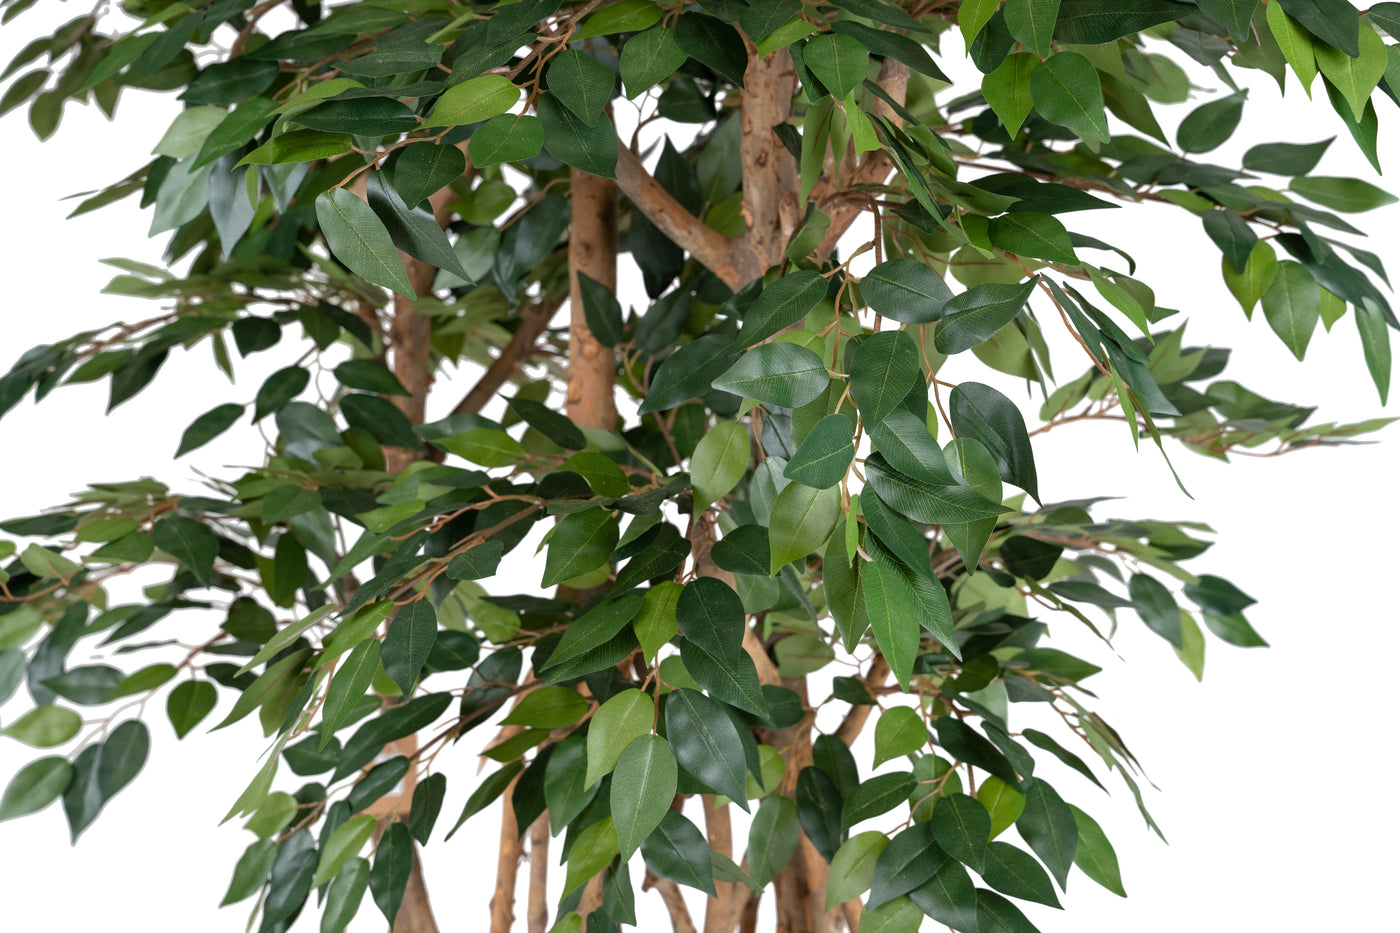 Bonsai artificial H180cm Ficus microcarpa cu 2880 frunze, Coroana W110cm